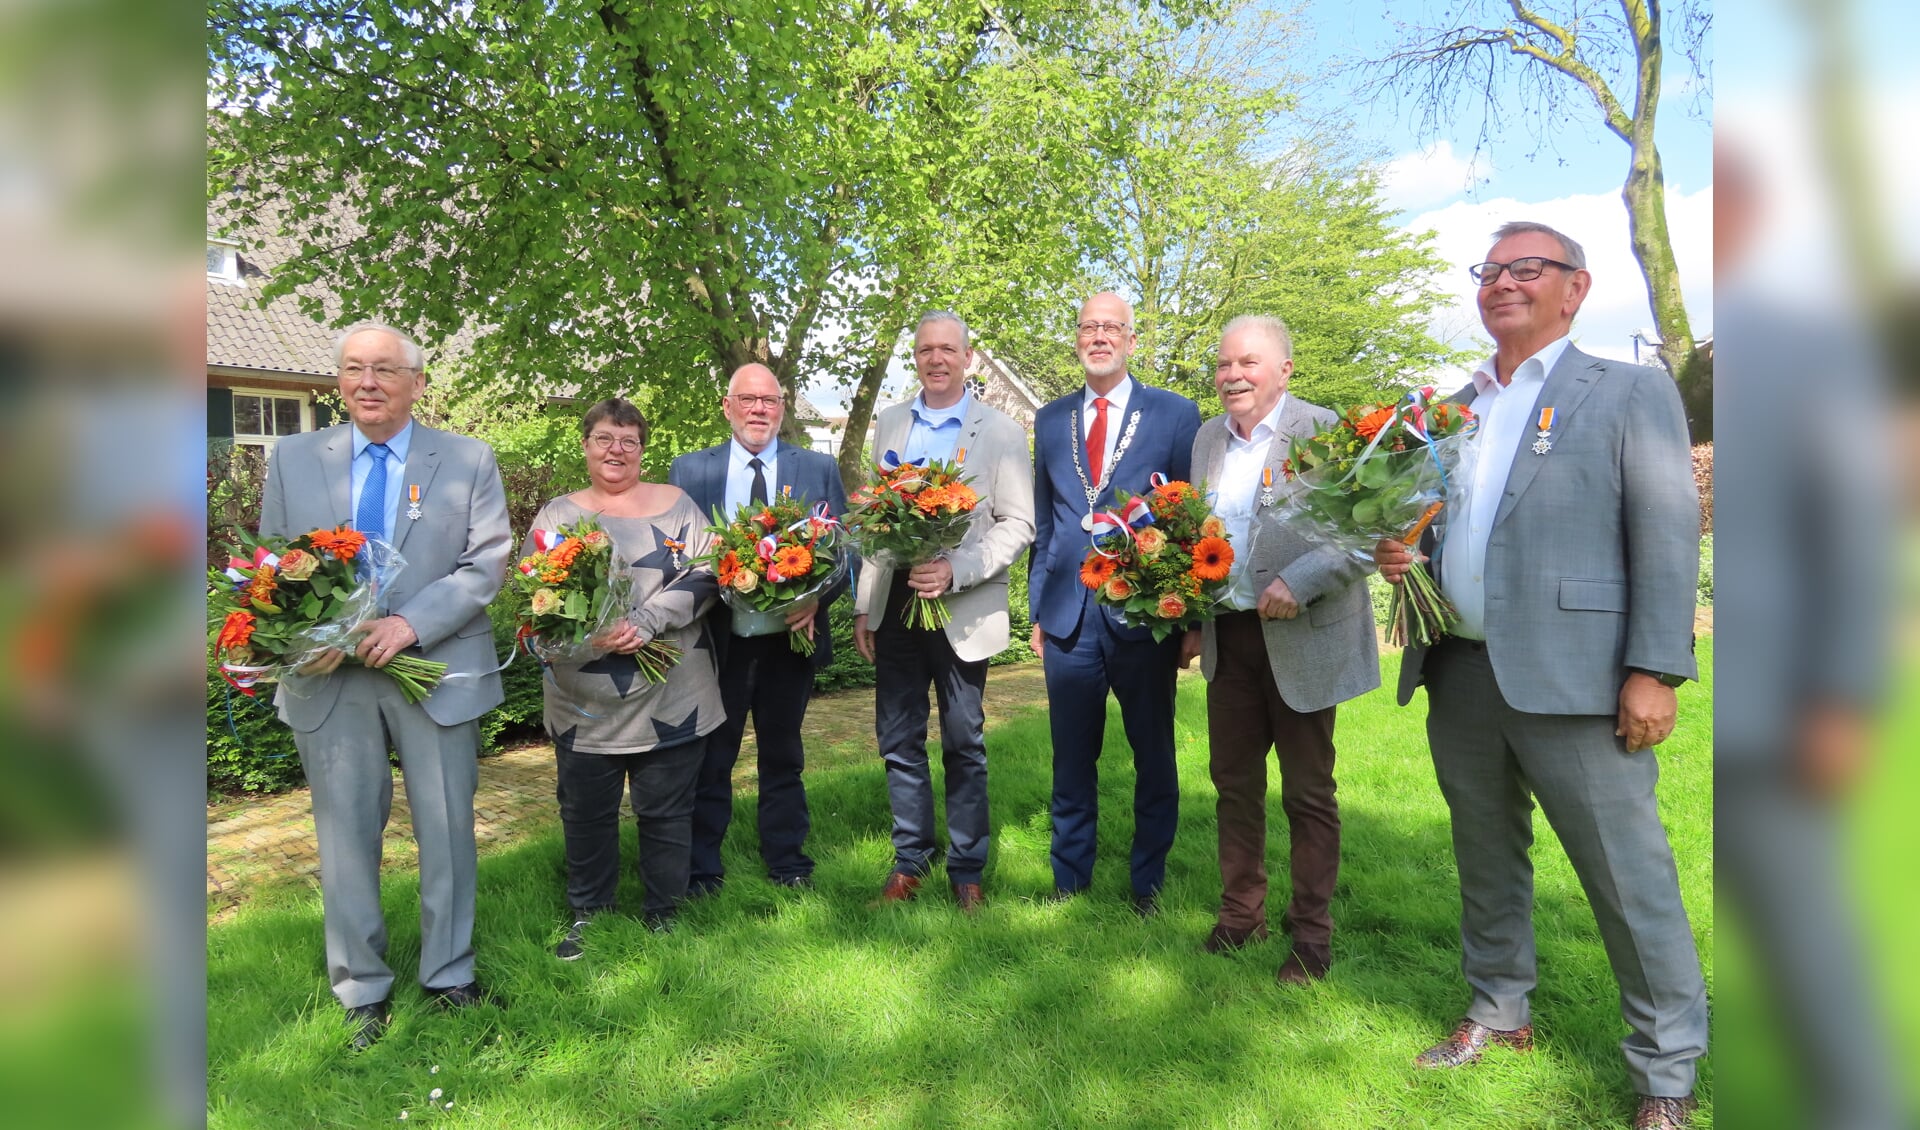 Ad Bleumink, Ria en Henny Helmig, William Boekhorst, burgemeester Arend van Hout, Frans Brink en Edwin Peters